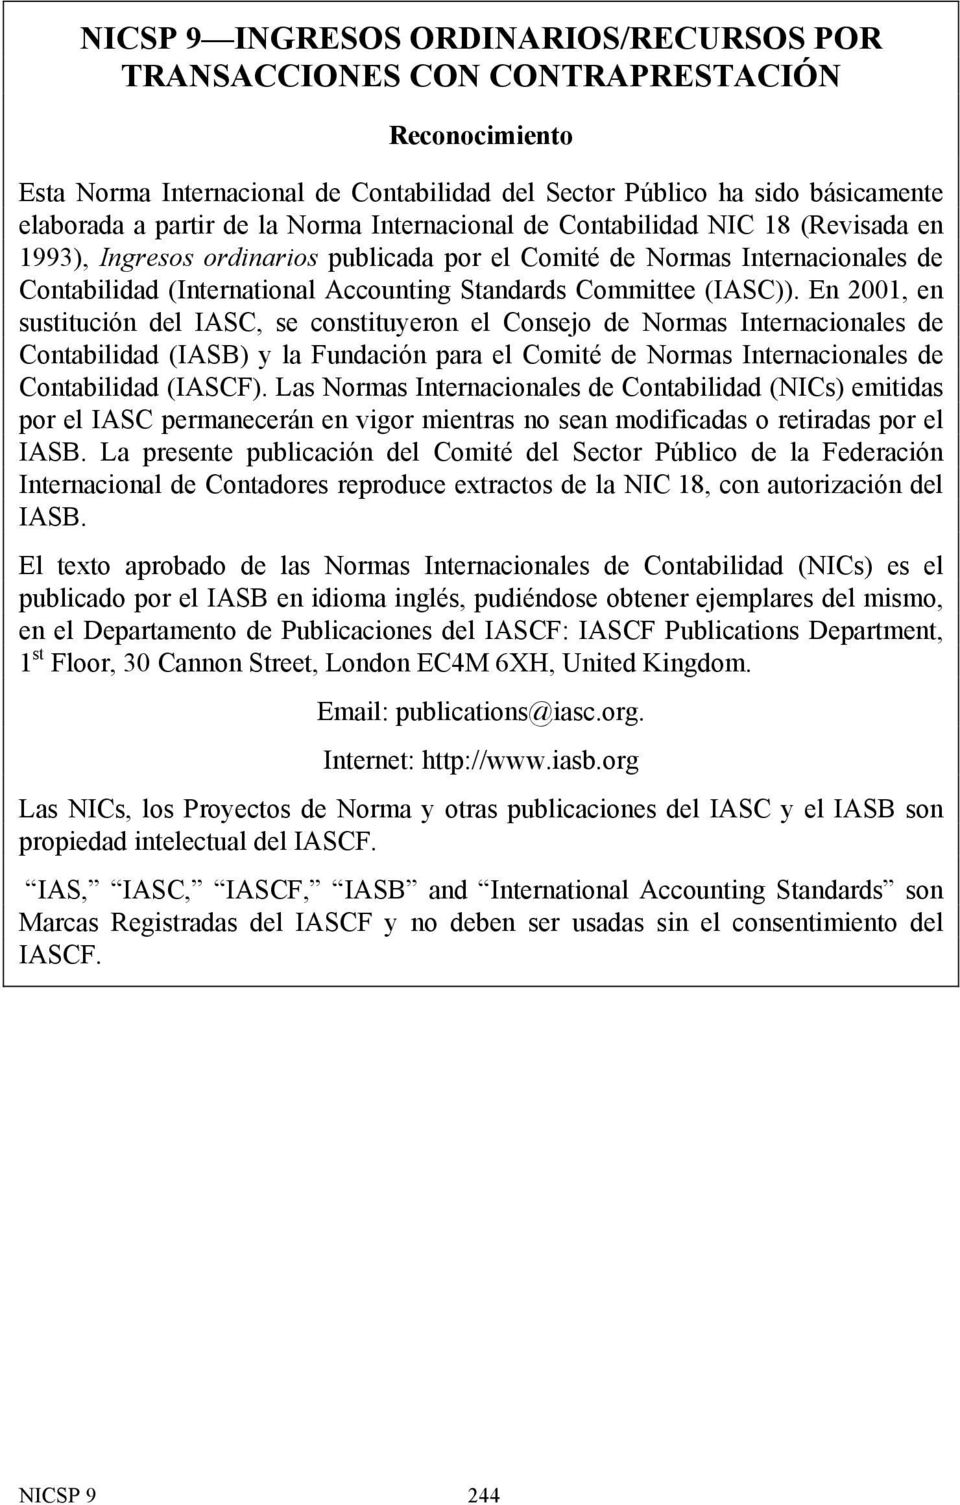 En 2001, en sustitución del IASC, se constituyeron el Consejo de Normas Internacionales de Contabilidad (IASB) y la Fundación para el Comité de Normas Internacionales de Contabilidad (IASCF).